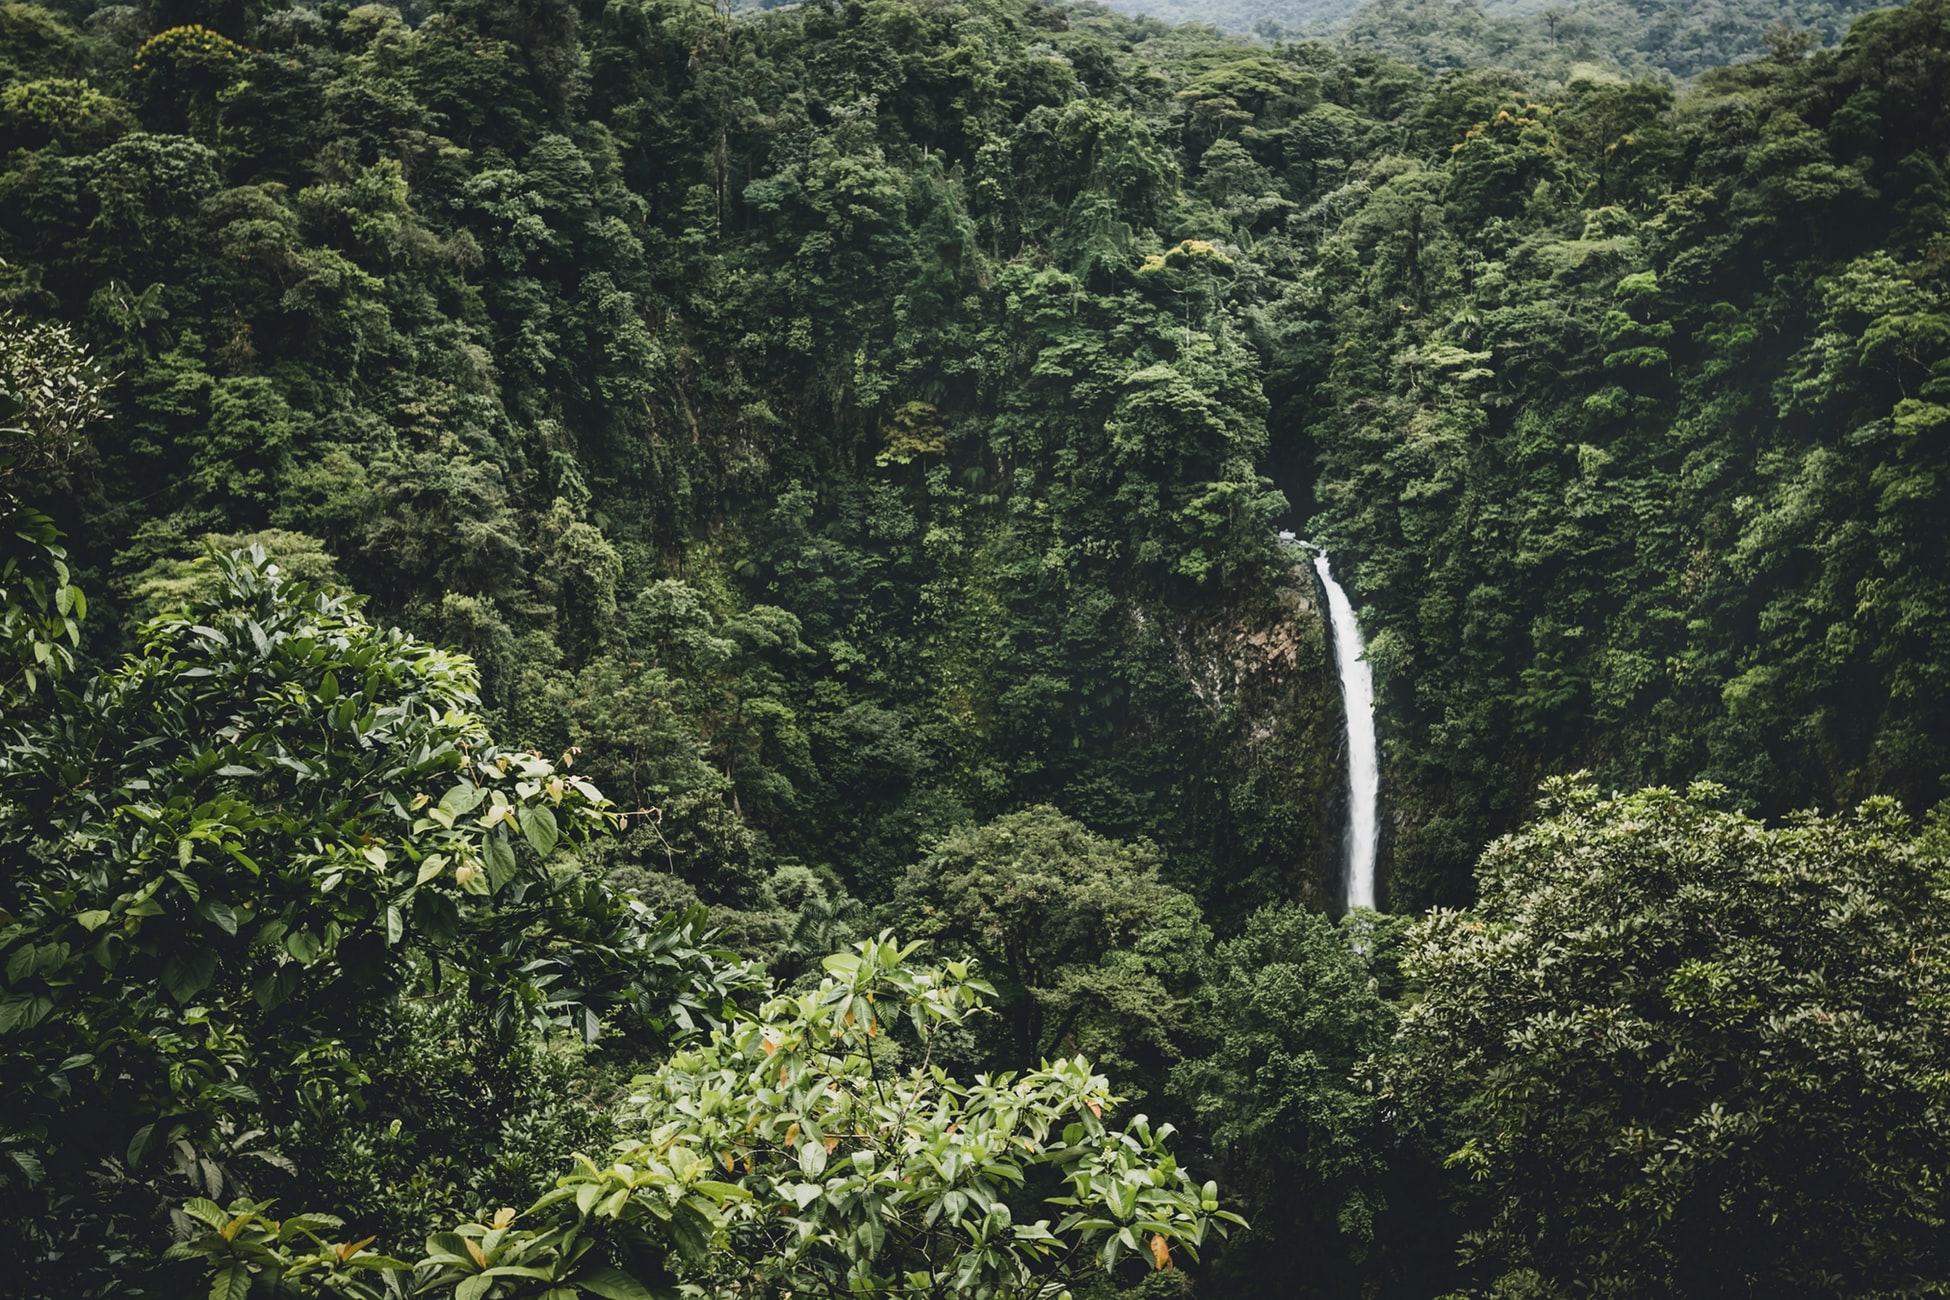 Pero entonces llegaron los madereros. Los bosques se desbrozaron mientras las cuadrillas de leñadores convertían libremente los recursos naturales de Costa Rica en beneficios.